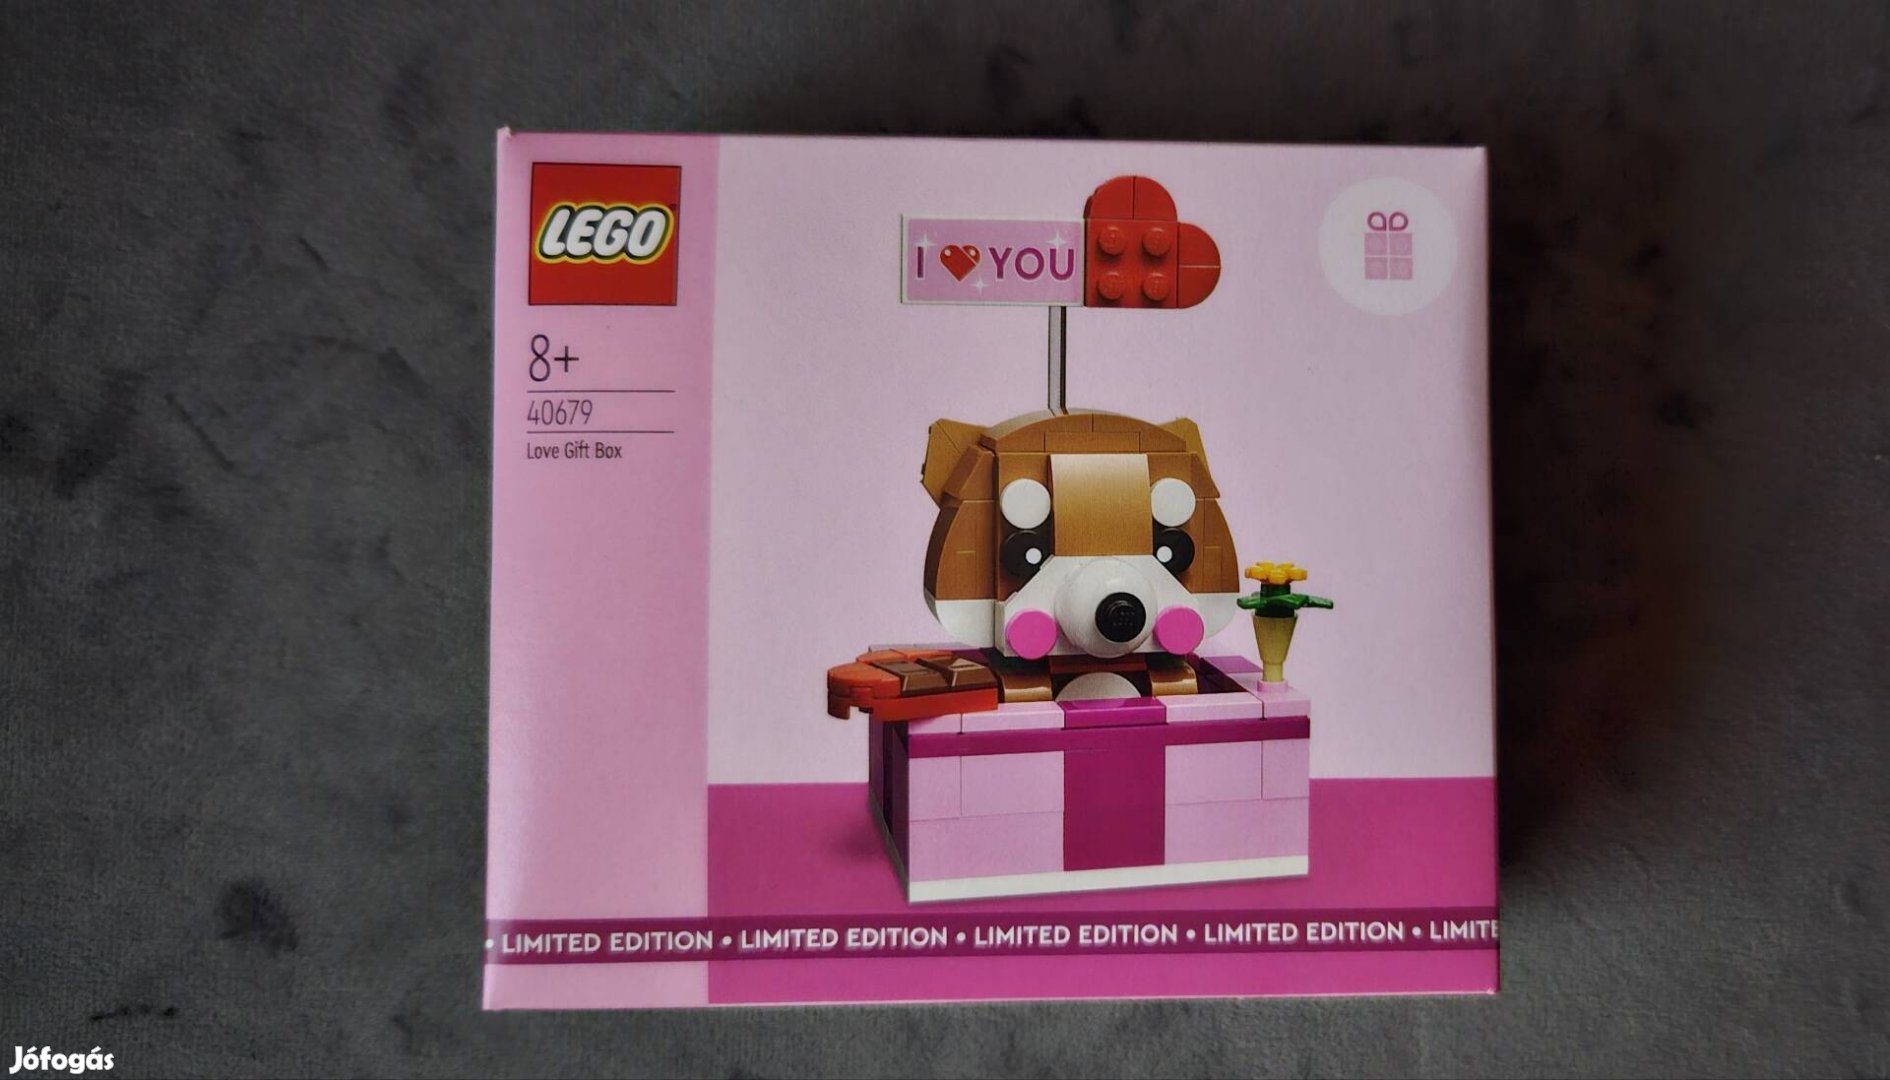 Eladó! Lego 40679 Love gift Box szett